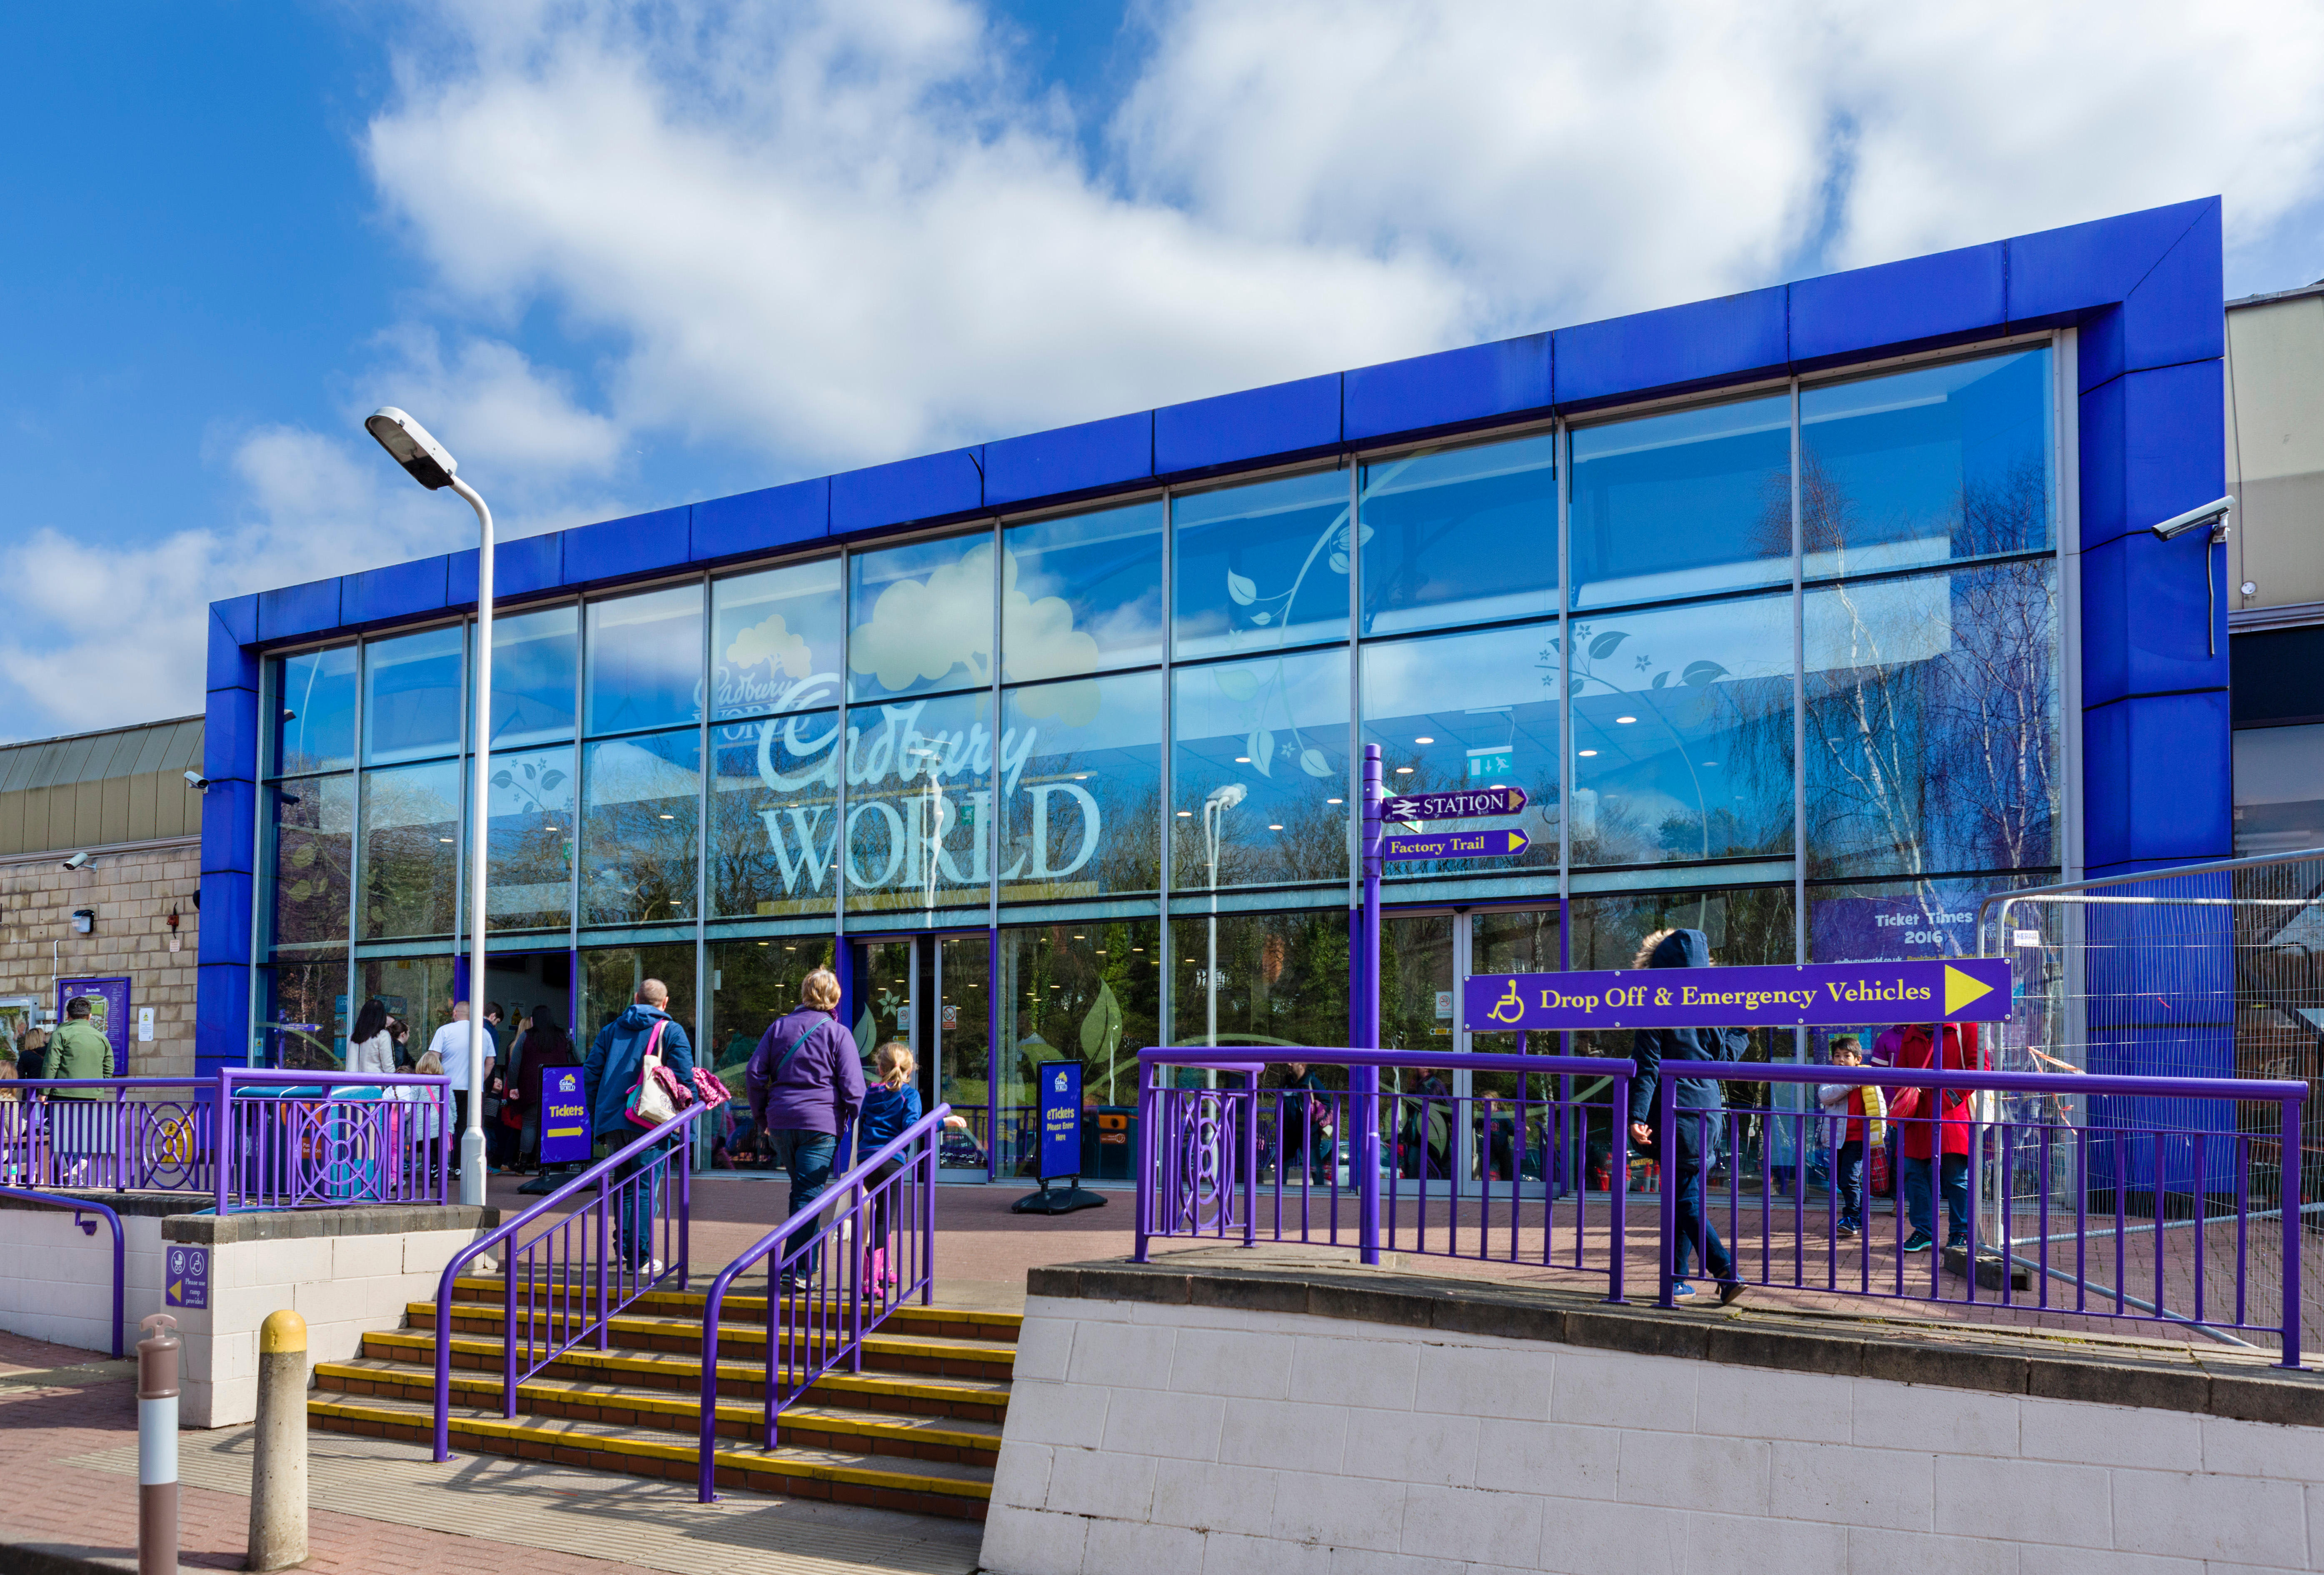 Eintrittskarten für Cadbury World kosten 18,95 £ für einen vollzahlenden Erwachsenen